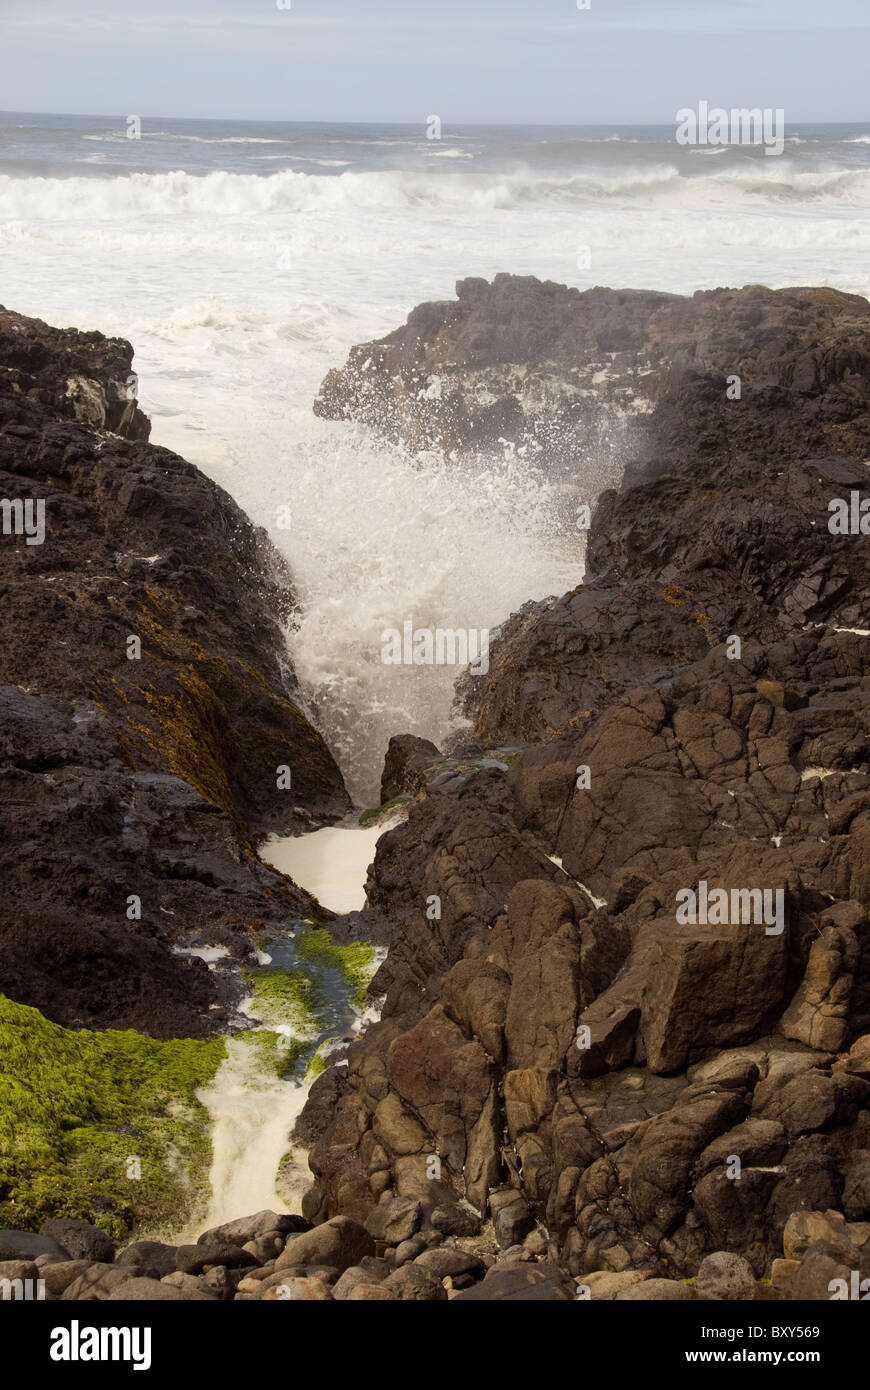 Onde precipitando in una stretta intercapedine tra le rocce lungo la costa centrale della Oregon, Stati Uniti d'America Foto Stock